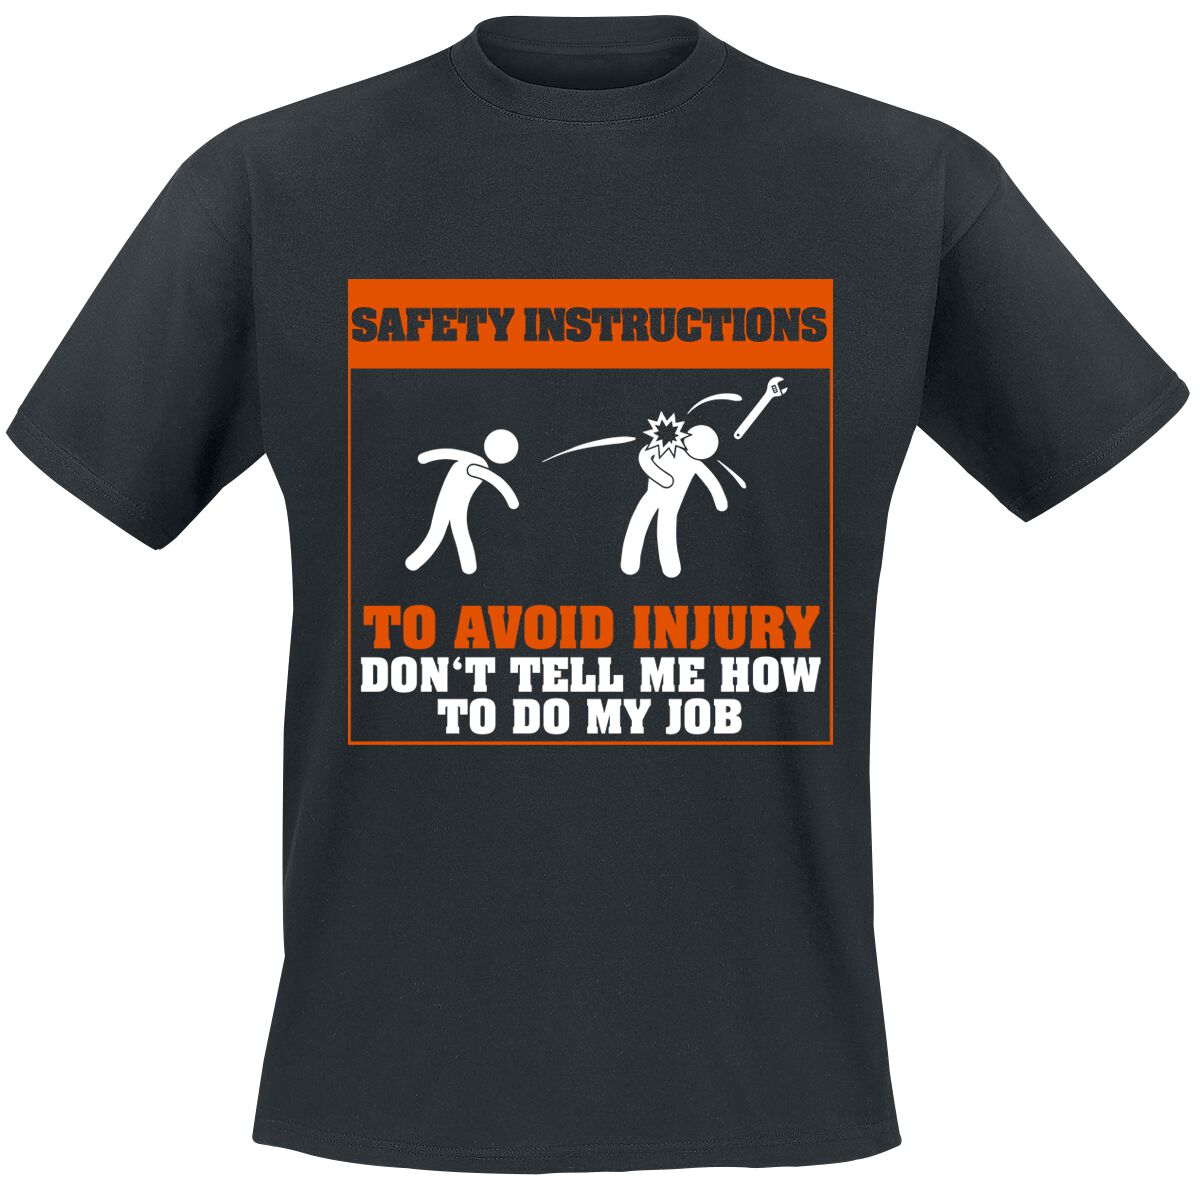 Beruf & Karriere T-Shirt - Safety Instructions - S bis 5XL - für Männer - Größe 4XL - schwarz